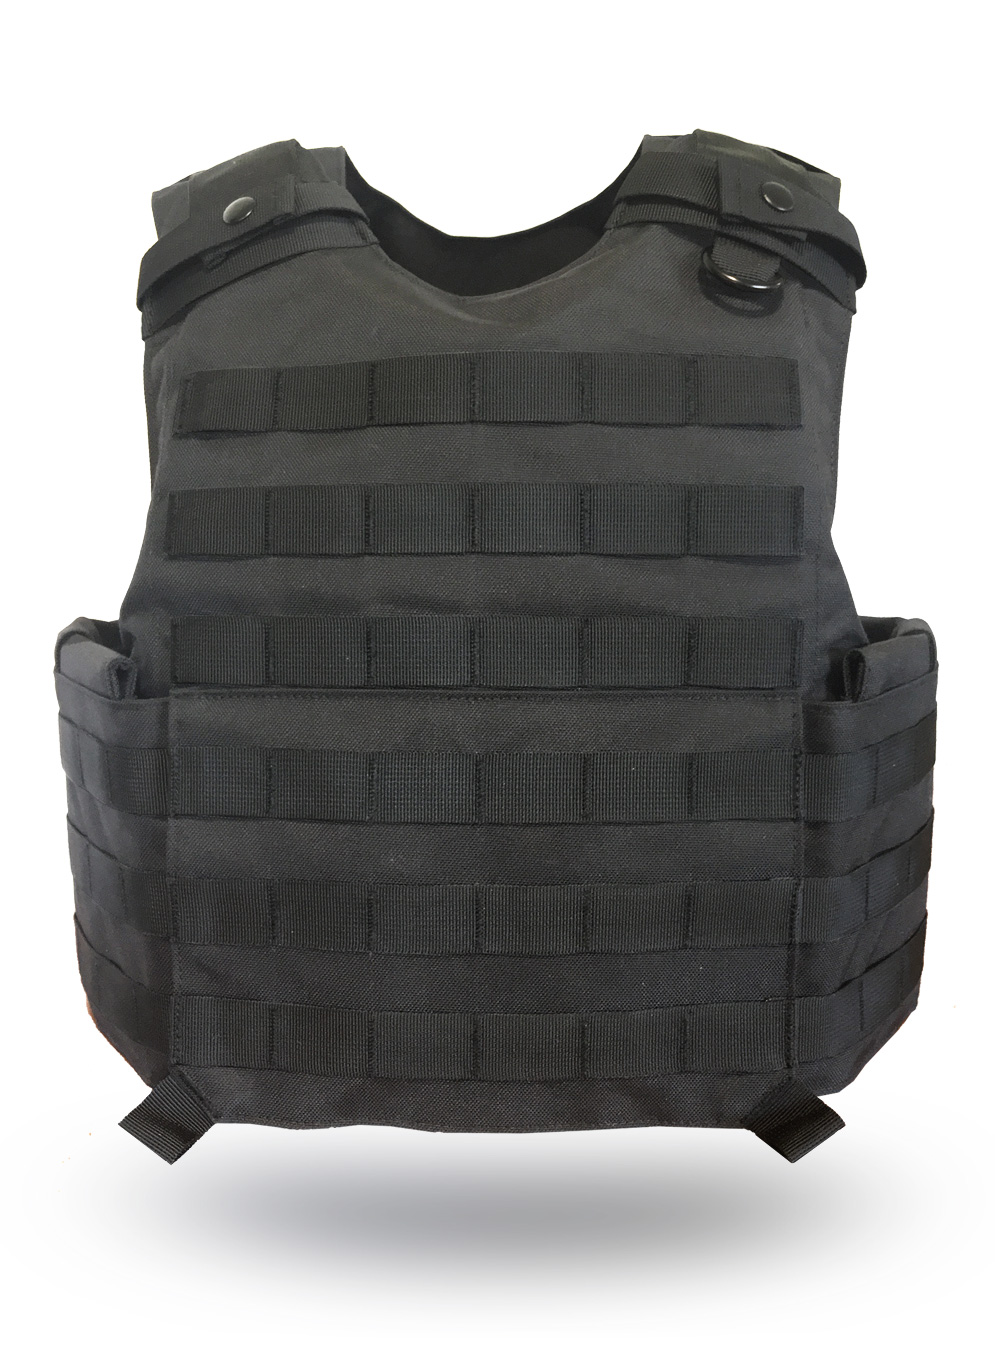 III BLK UK heavy tactical body armor bulletproof vest ballistic vest with IIIA 